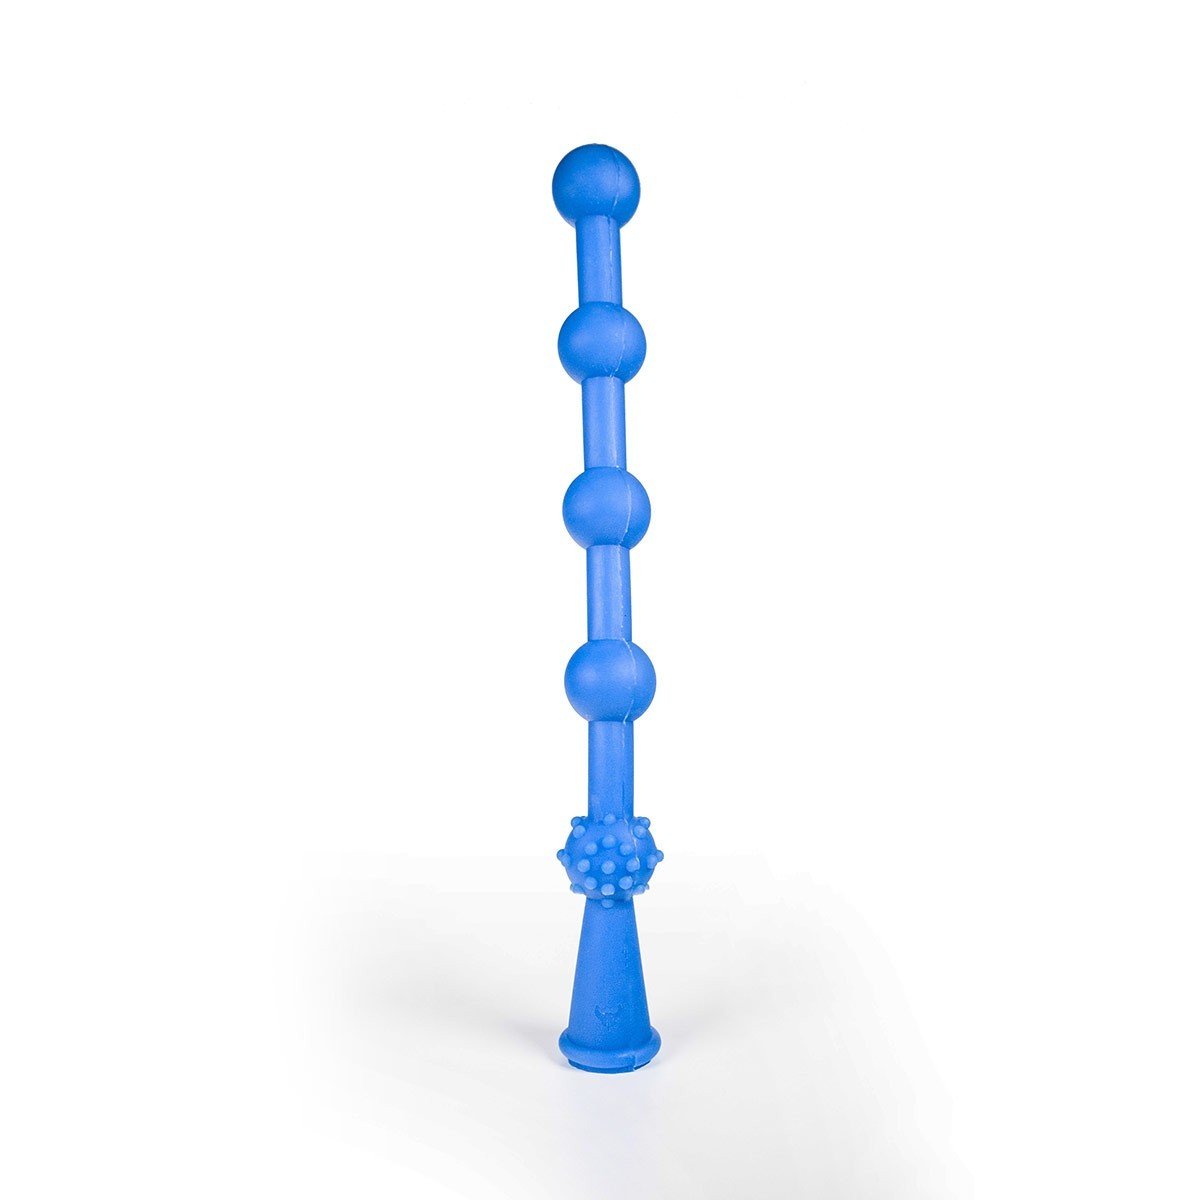 Anální kuličky Bulder Glidelas modré, silikonové anální kuličky 40 x 4,3 cm